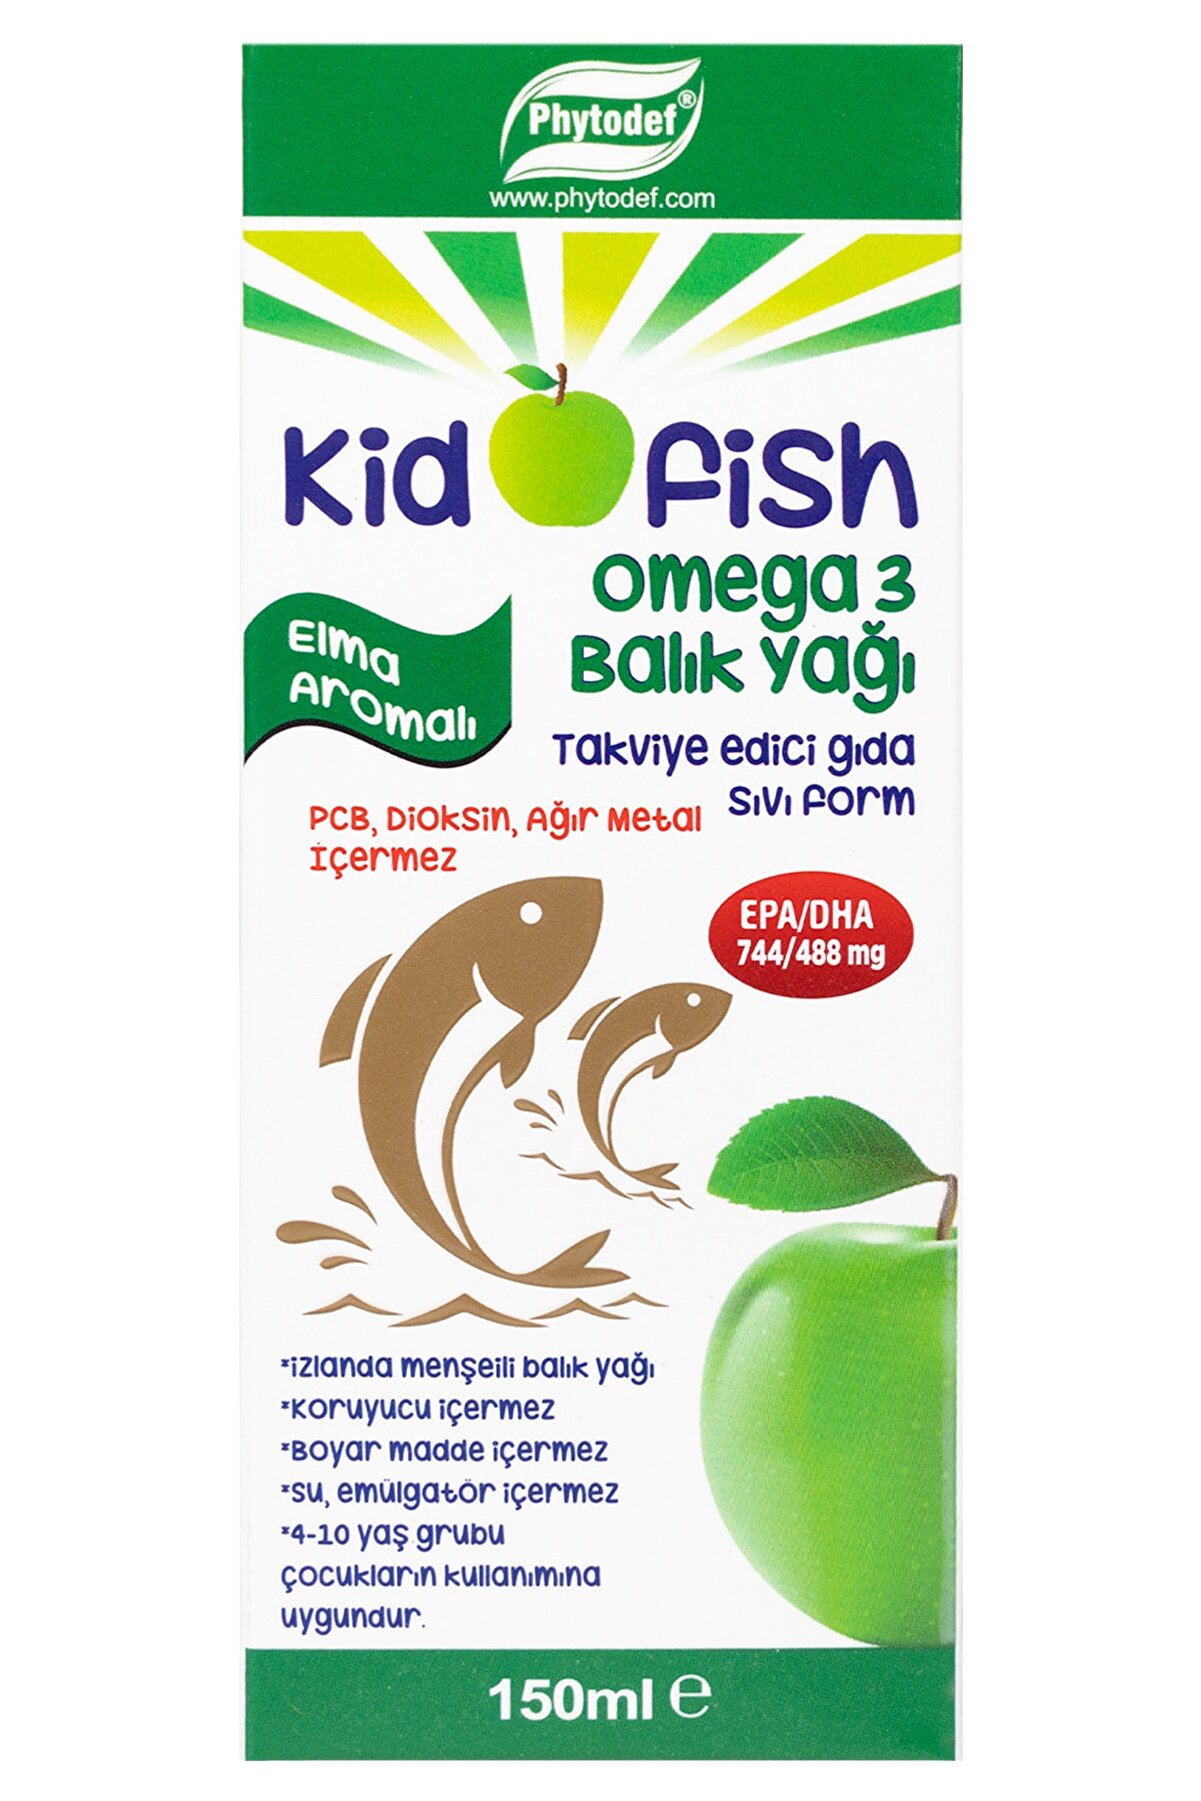 Phytodef Kidofish Omega 3 Izlanda Menşeli Balık Yağı Epa/dha 744/488 - 150 Ml (elma Aromalı)